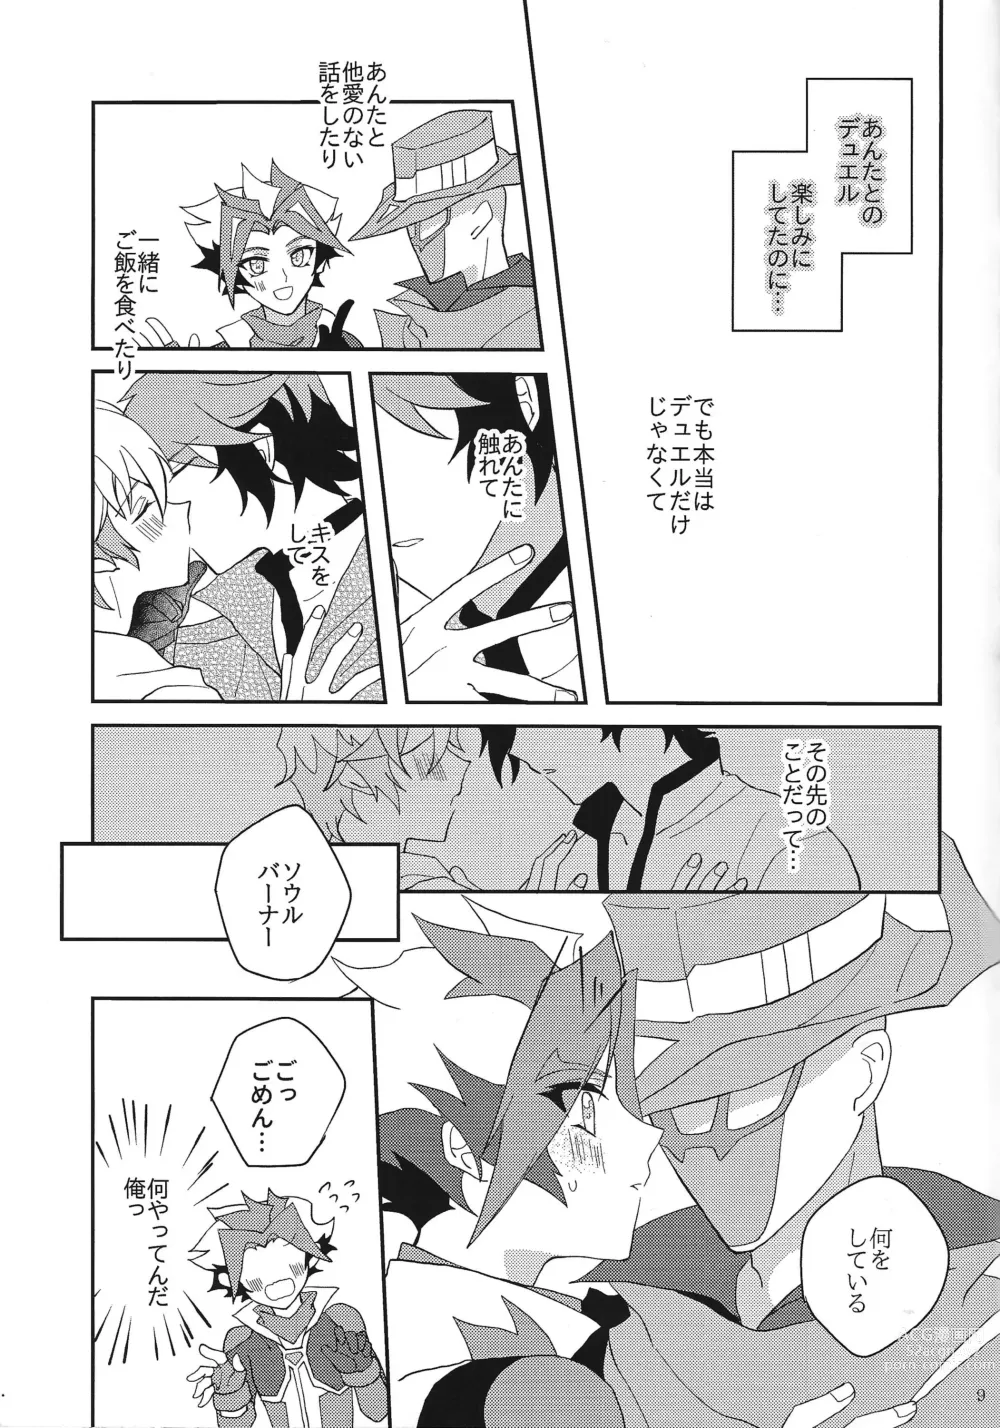 Page 8 of doujinshi Muchu ni natte yo maidarin